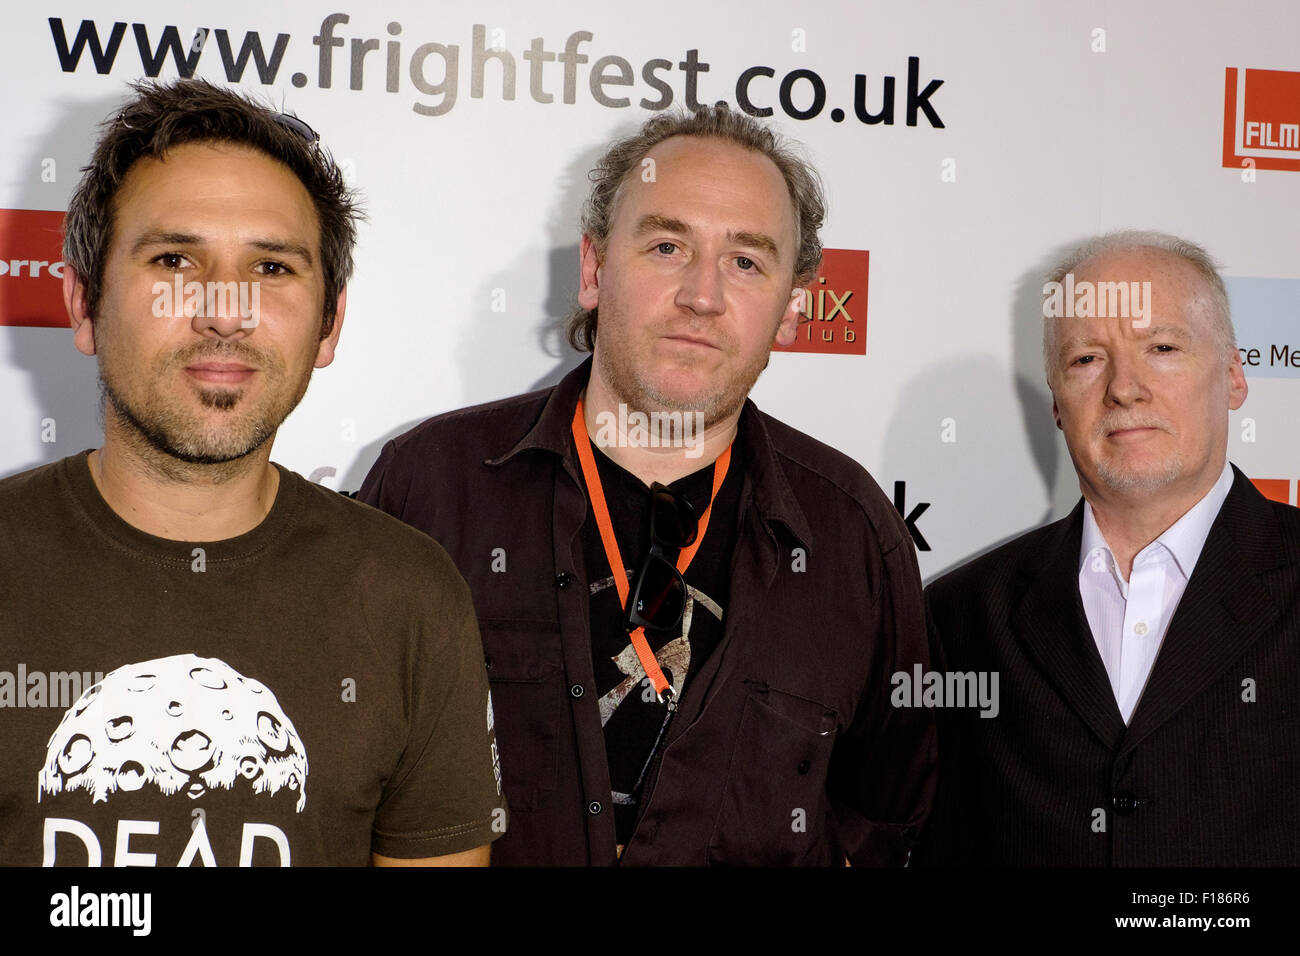 Réalisateur Paul Goodwin, Kevin O'Neill, Sean Hogan assiste à la Frightfest 2015 le 29/08/2015 au VUE West End, Londres. Le dépistage de l'avenir du film choc ! L'histoire de 2000AD. Photo par Julie Edwards/Alamy Live News Banque D'Images